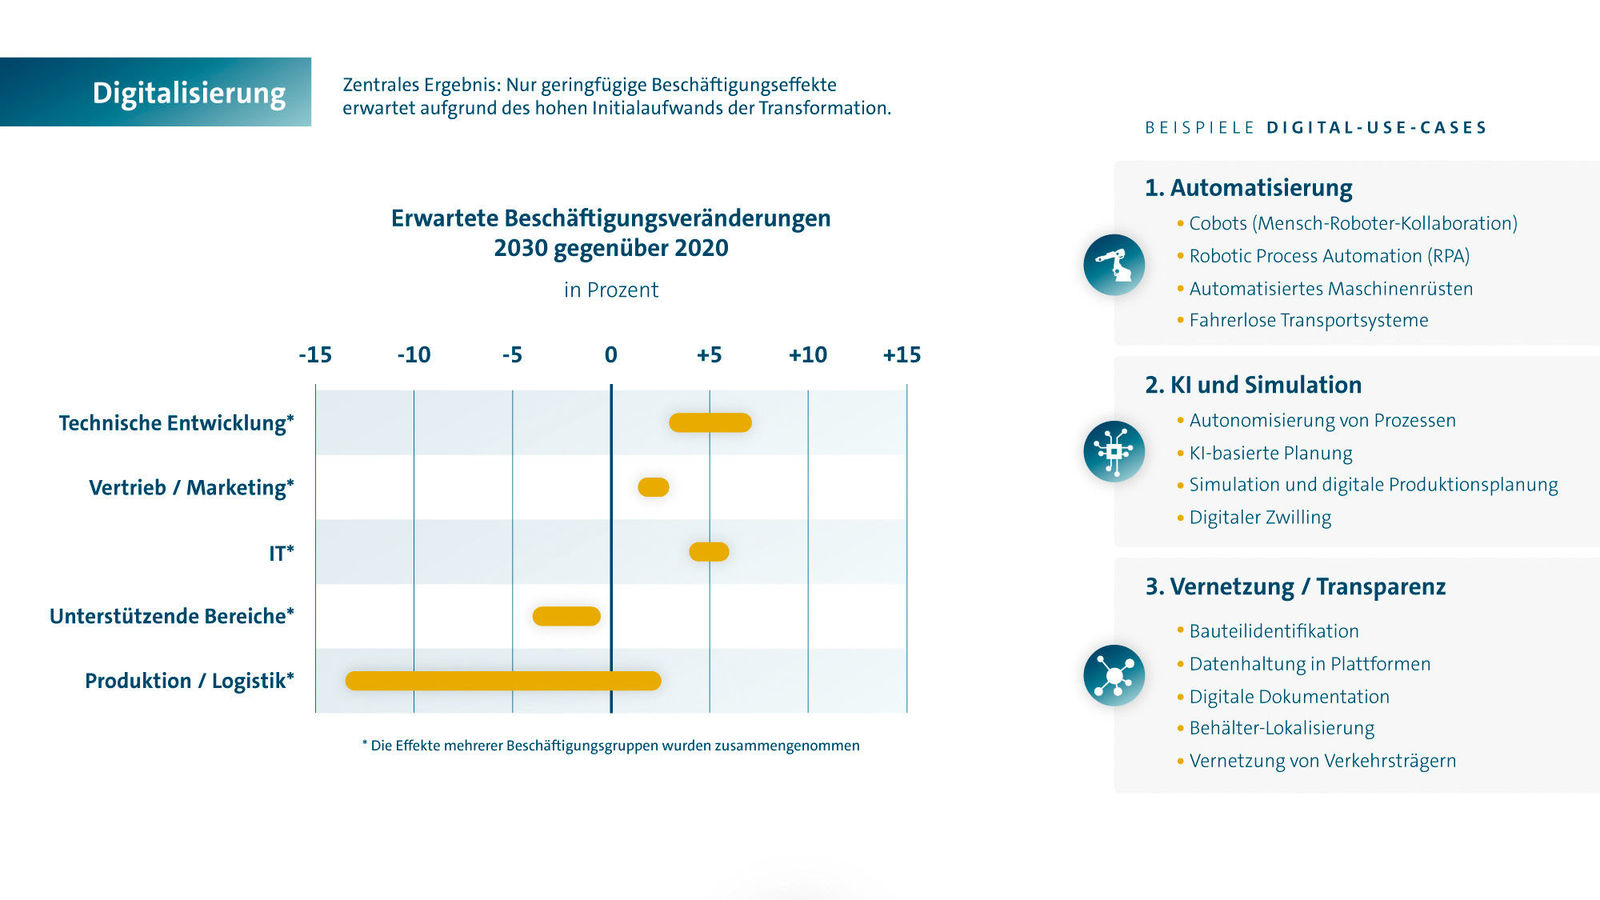 Story: Fraunhofer-Studie: Beschäftigung bei Volkswagen im Jahr 2030